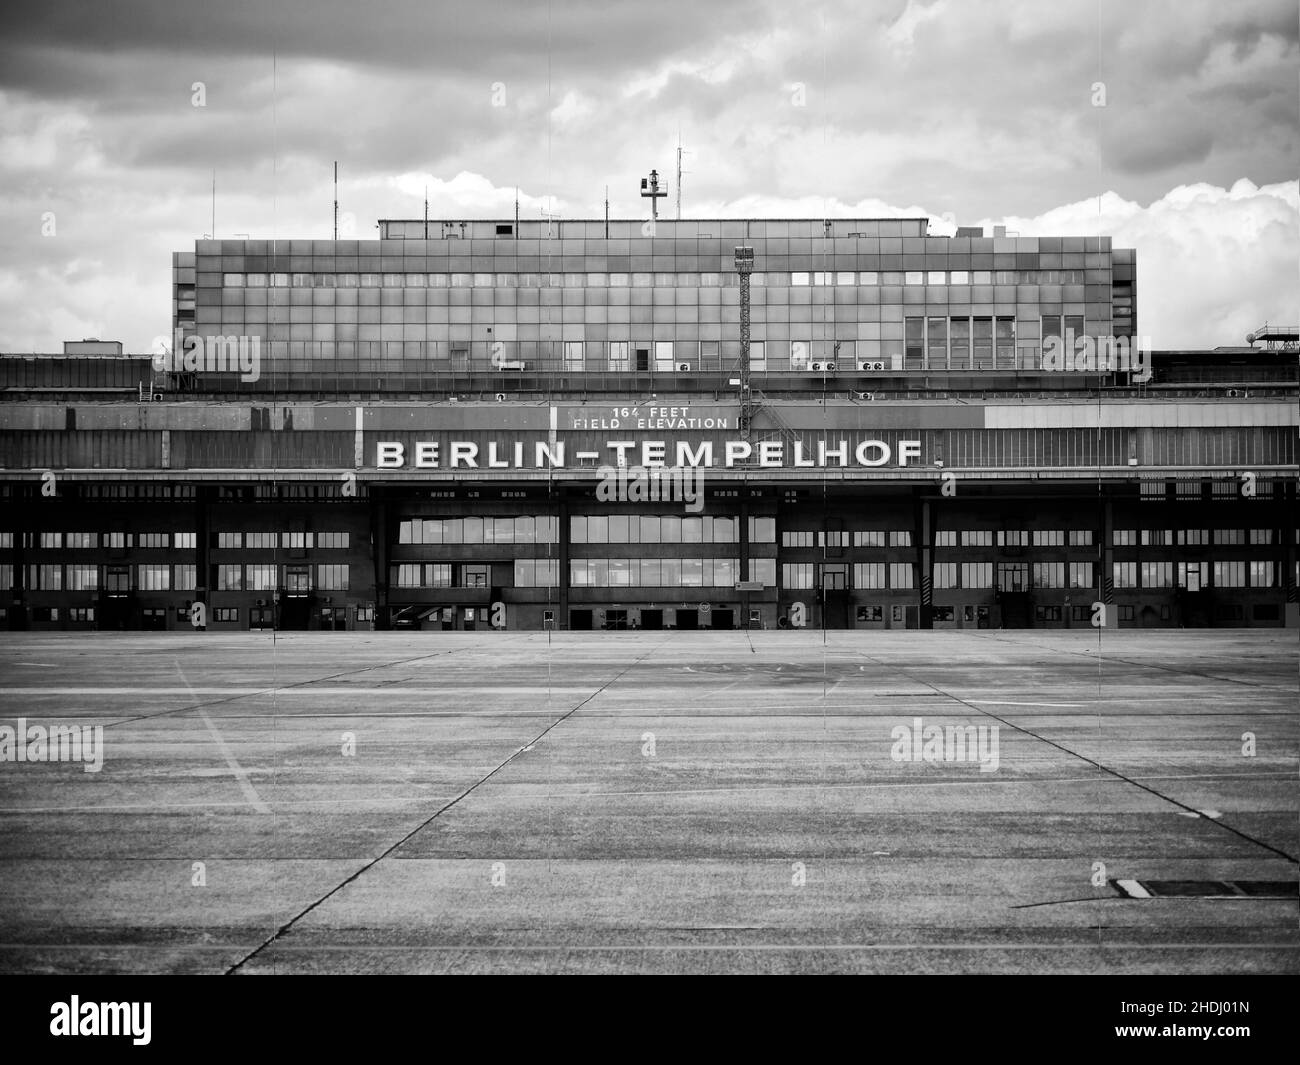 Vecchio edificio del terminal presso il nuovo parco pubblico Tempelhofer, sito del famoso ex aeroporto Tempelhof di Berlino in Germania Foto Stock